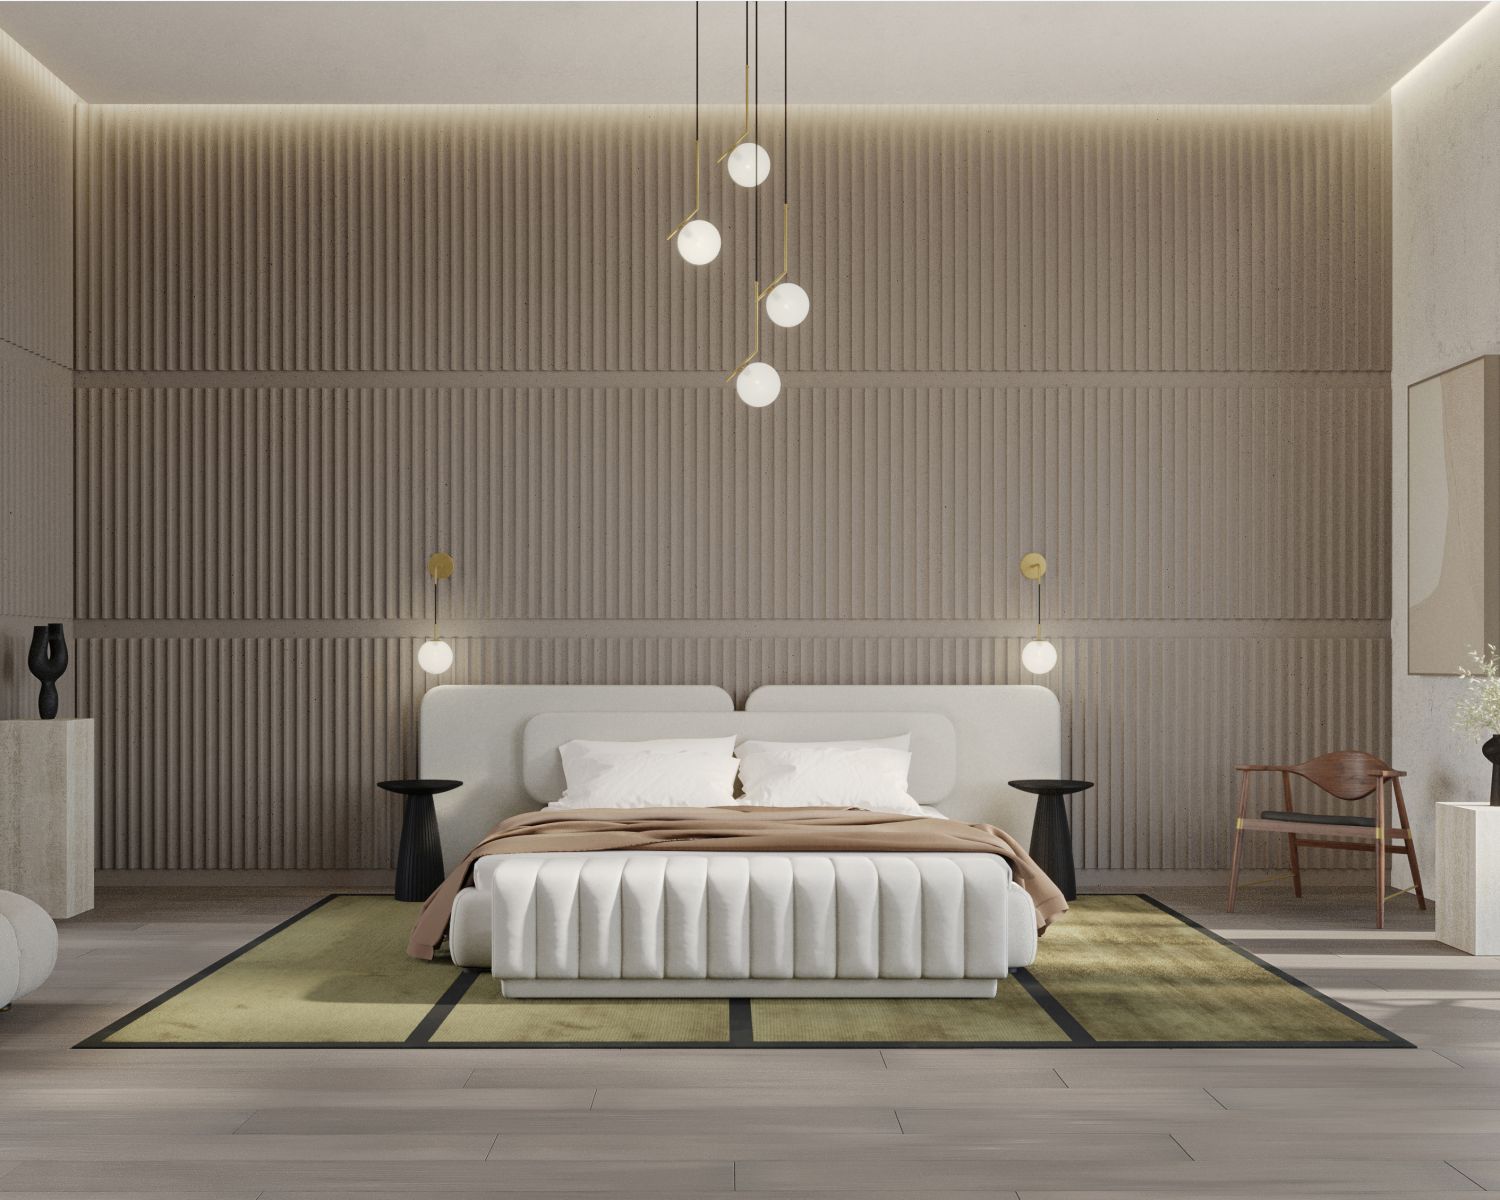 Elegant Minimalist Bed Frame Design